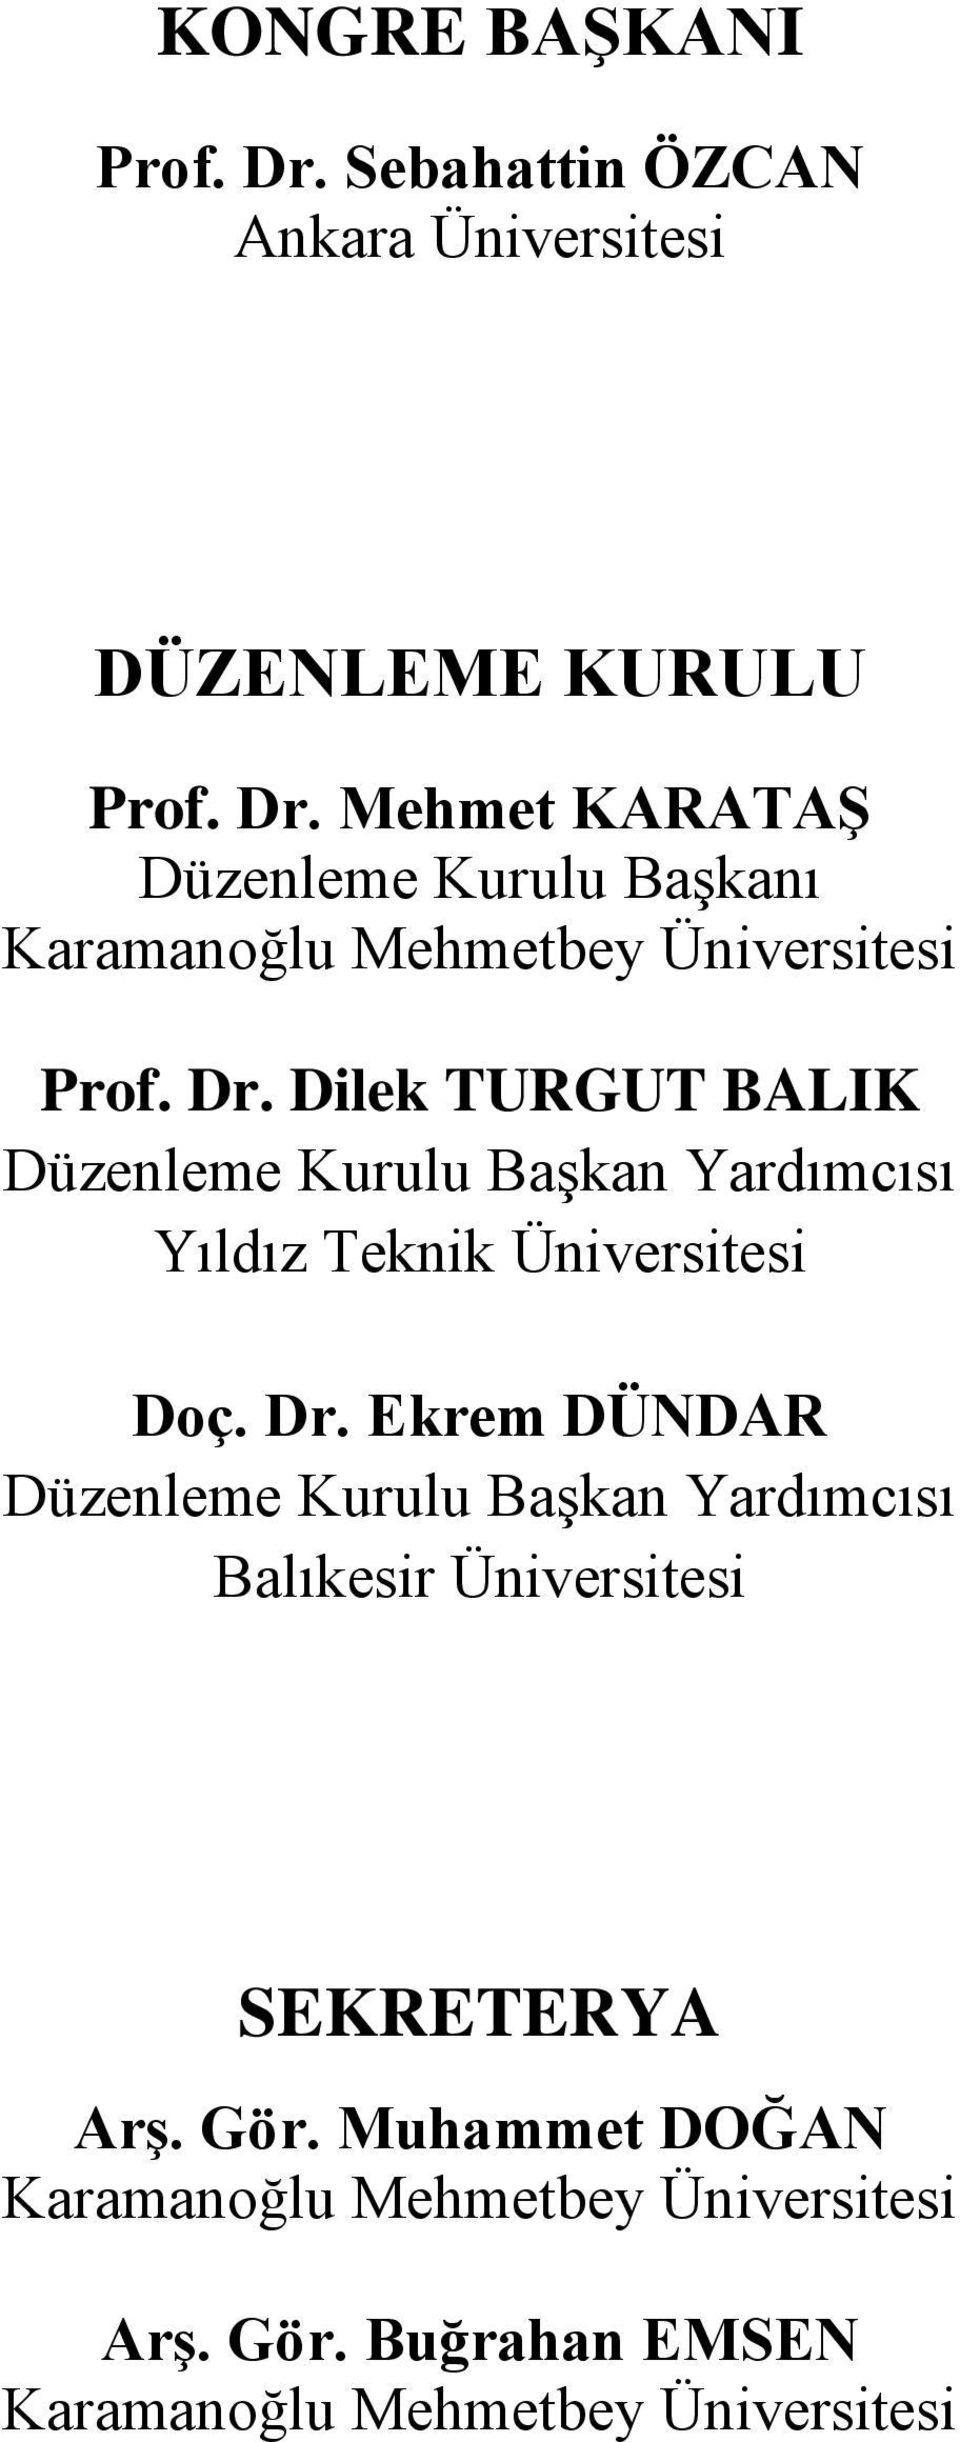 Mehmet KARATAŞ Düzenleme Kurulu Başkanı Prof. Dr.